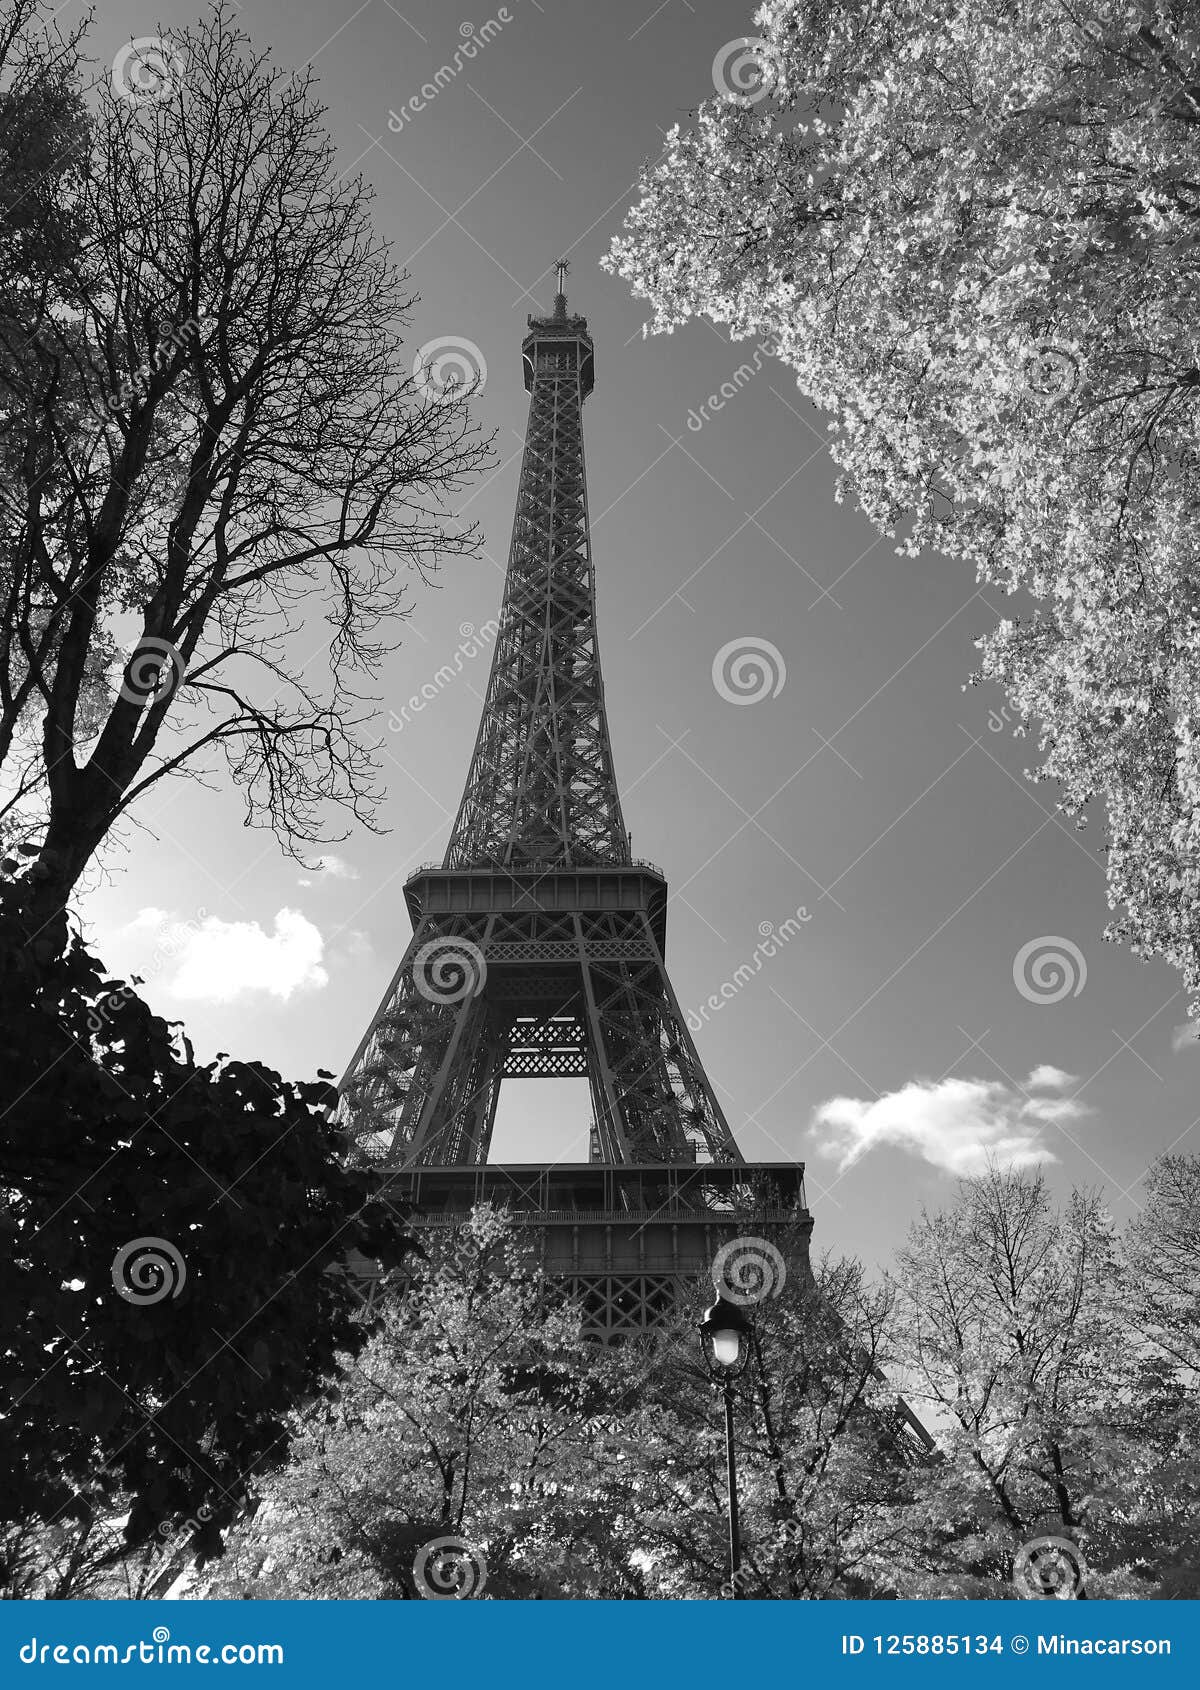 Foto In Bianco E Nero Della Torre Eiffel In Autunno Parigi Francia Fotografia Stock Immagine Di Fogliame Nero